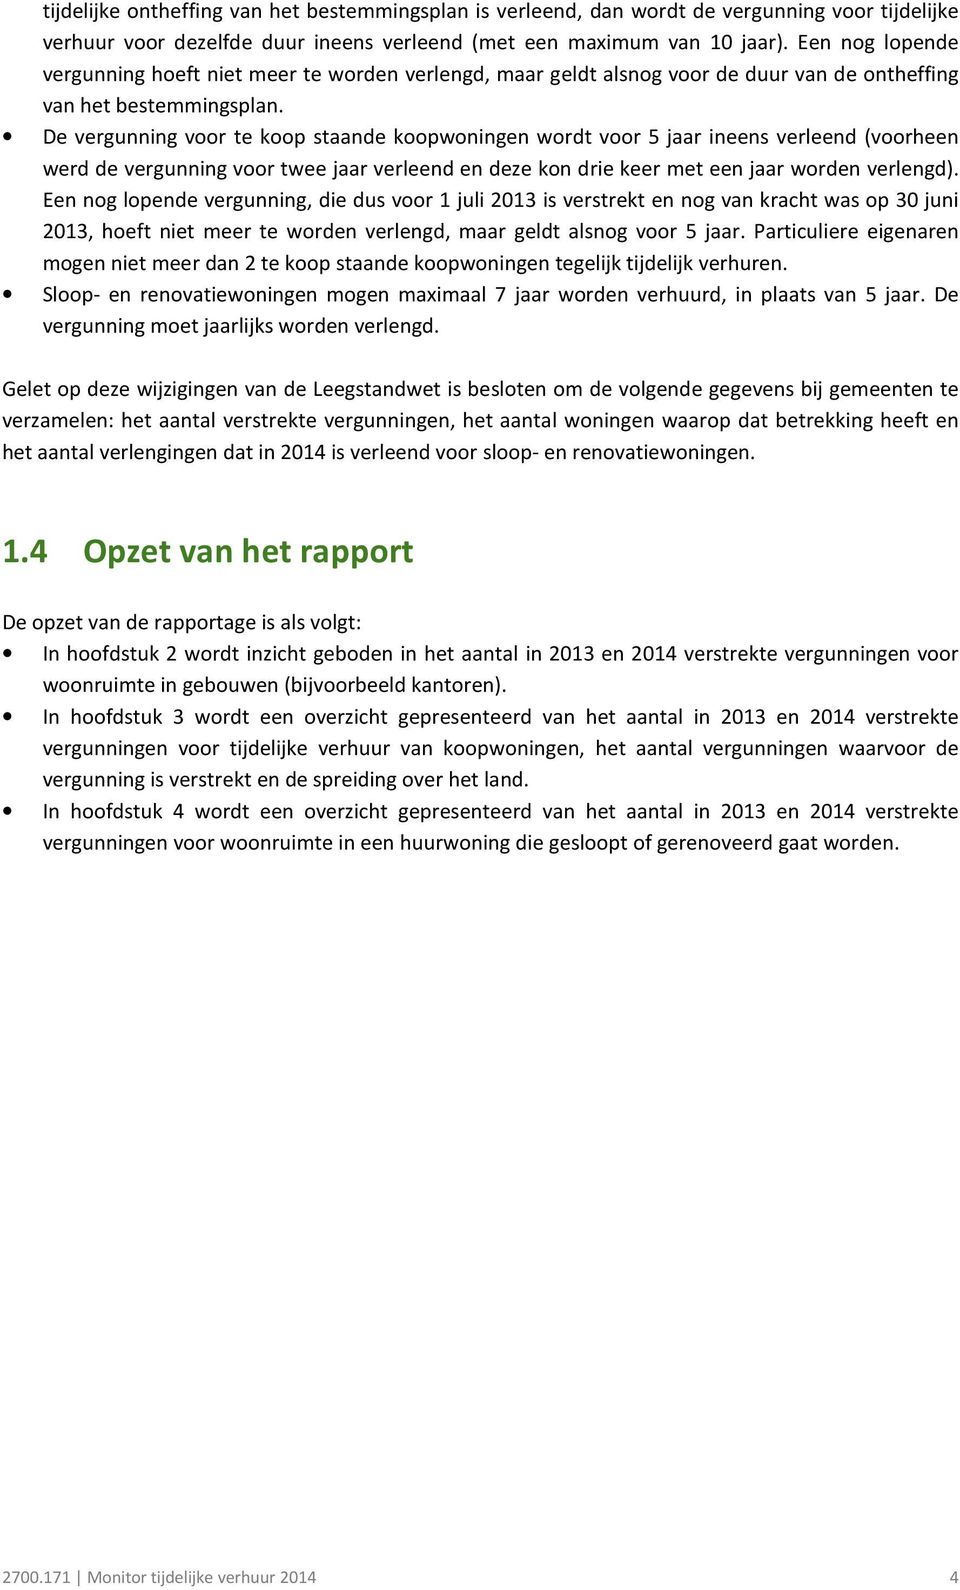 De vergunning voor te koop staande koopwoningen wordt voor 5 jaar ineens verleend (voorheen werd de vergunning voor twee jaar verleend en deze kon drie keer met een jaar worden verlengd).